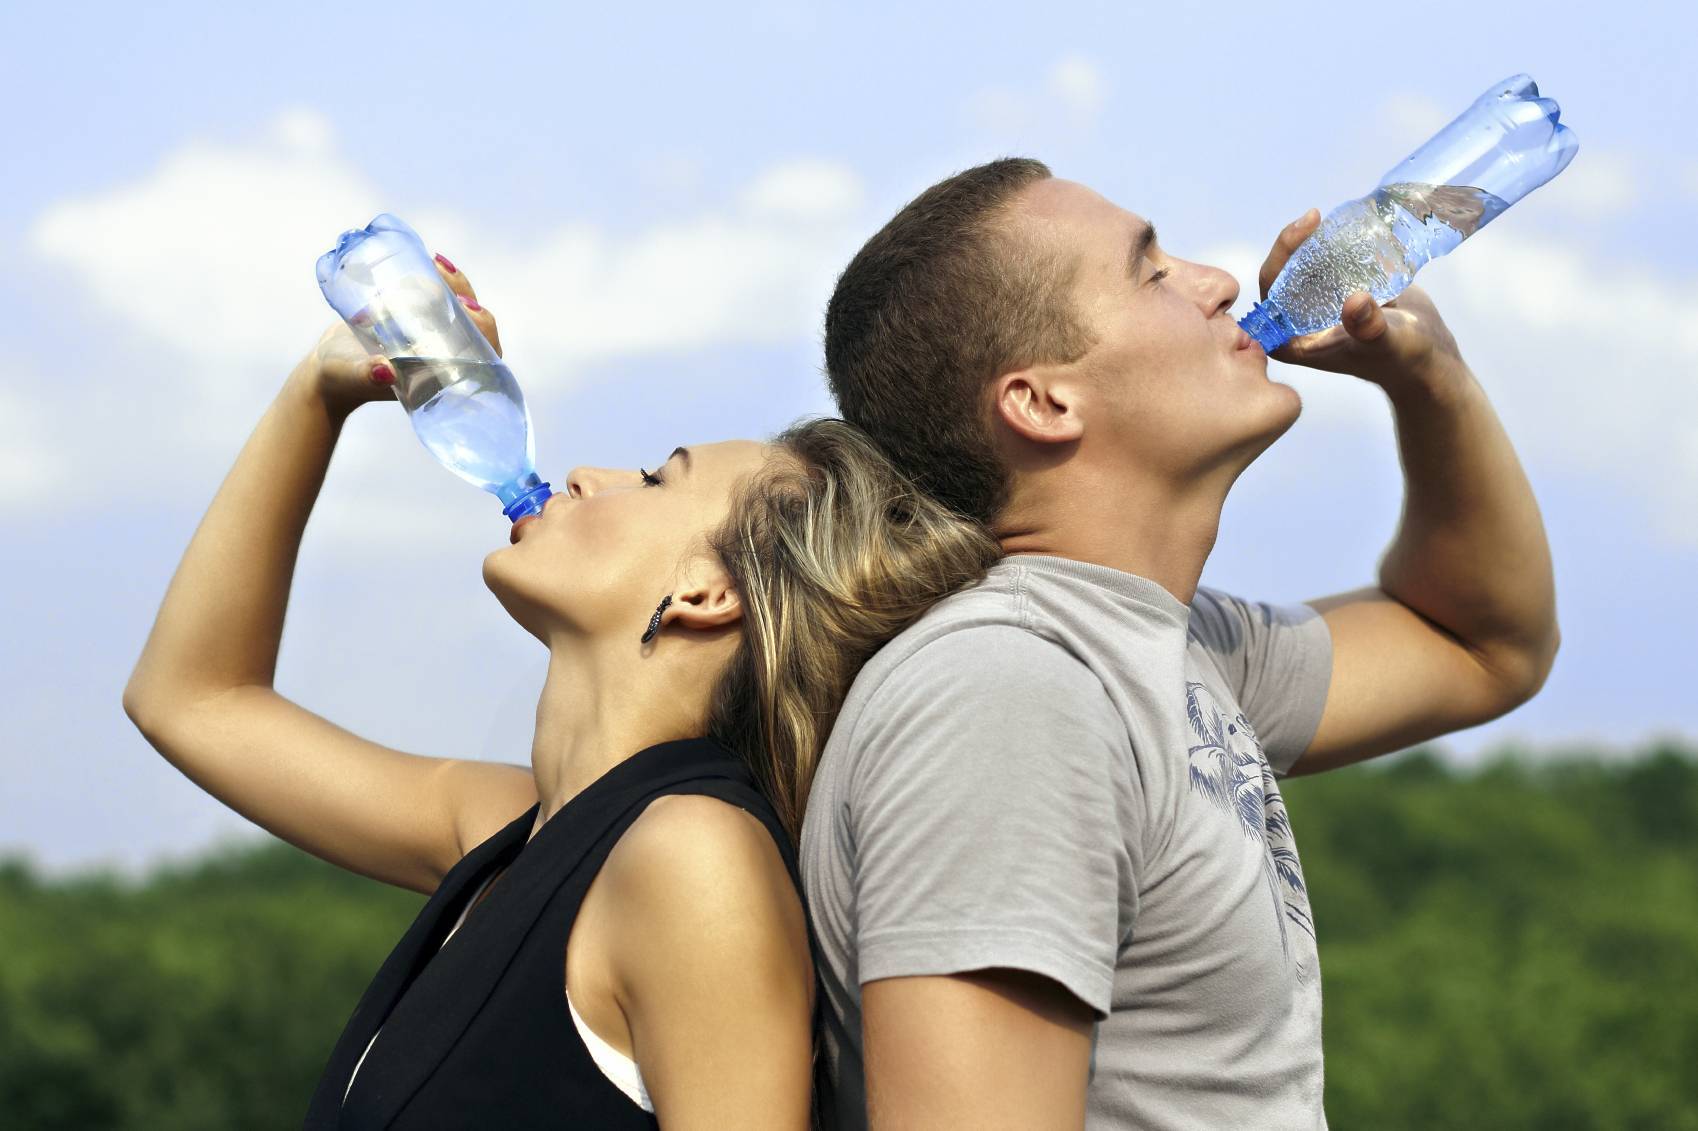 Топ-7 напитков для лета, которые спасут организм от обезвоживания и утолят жажду